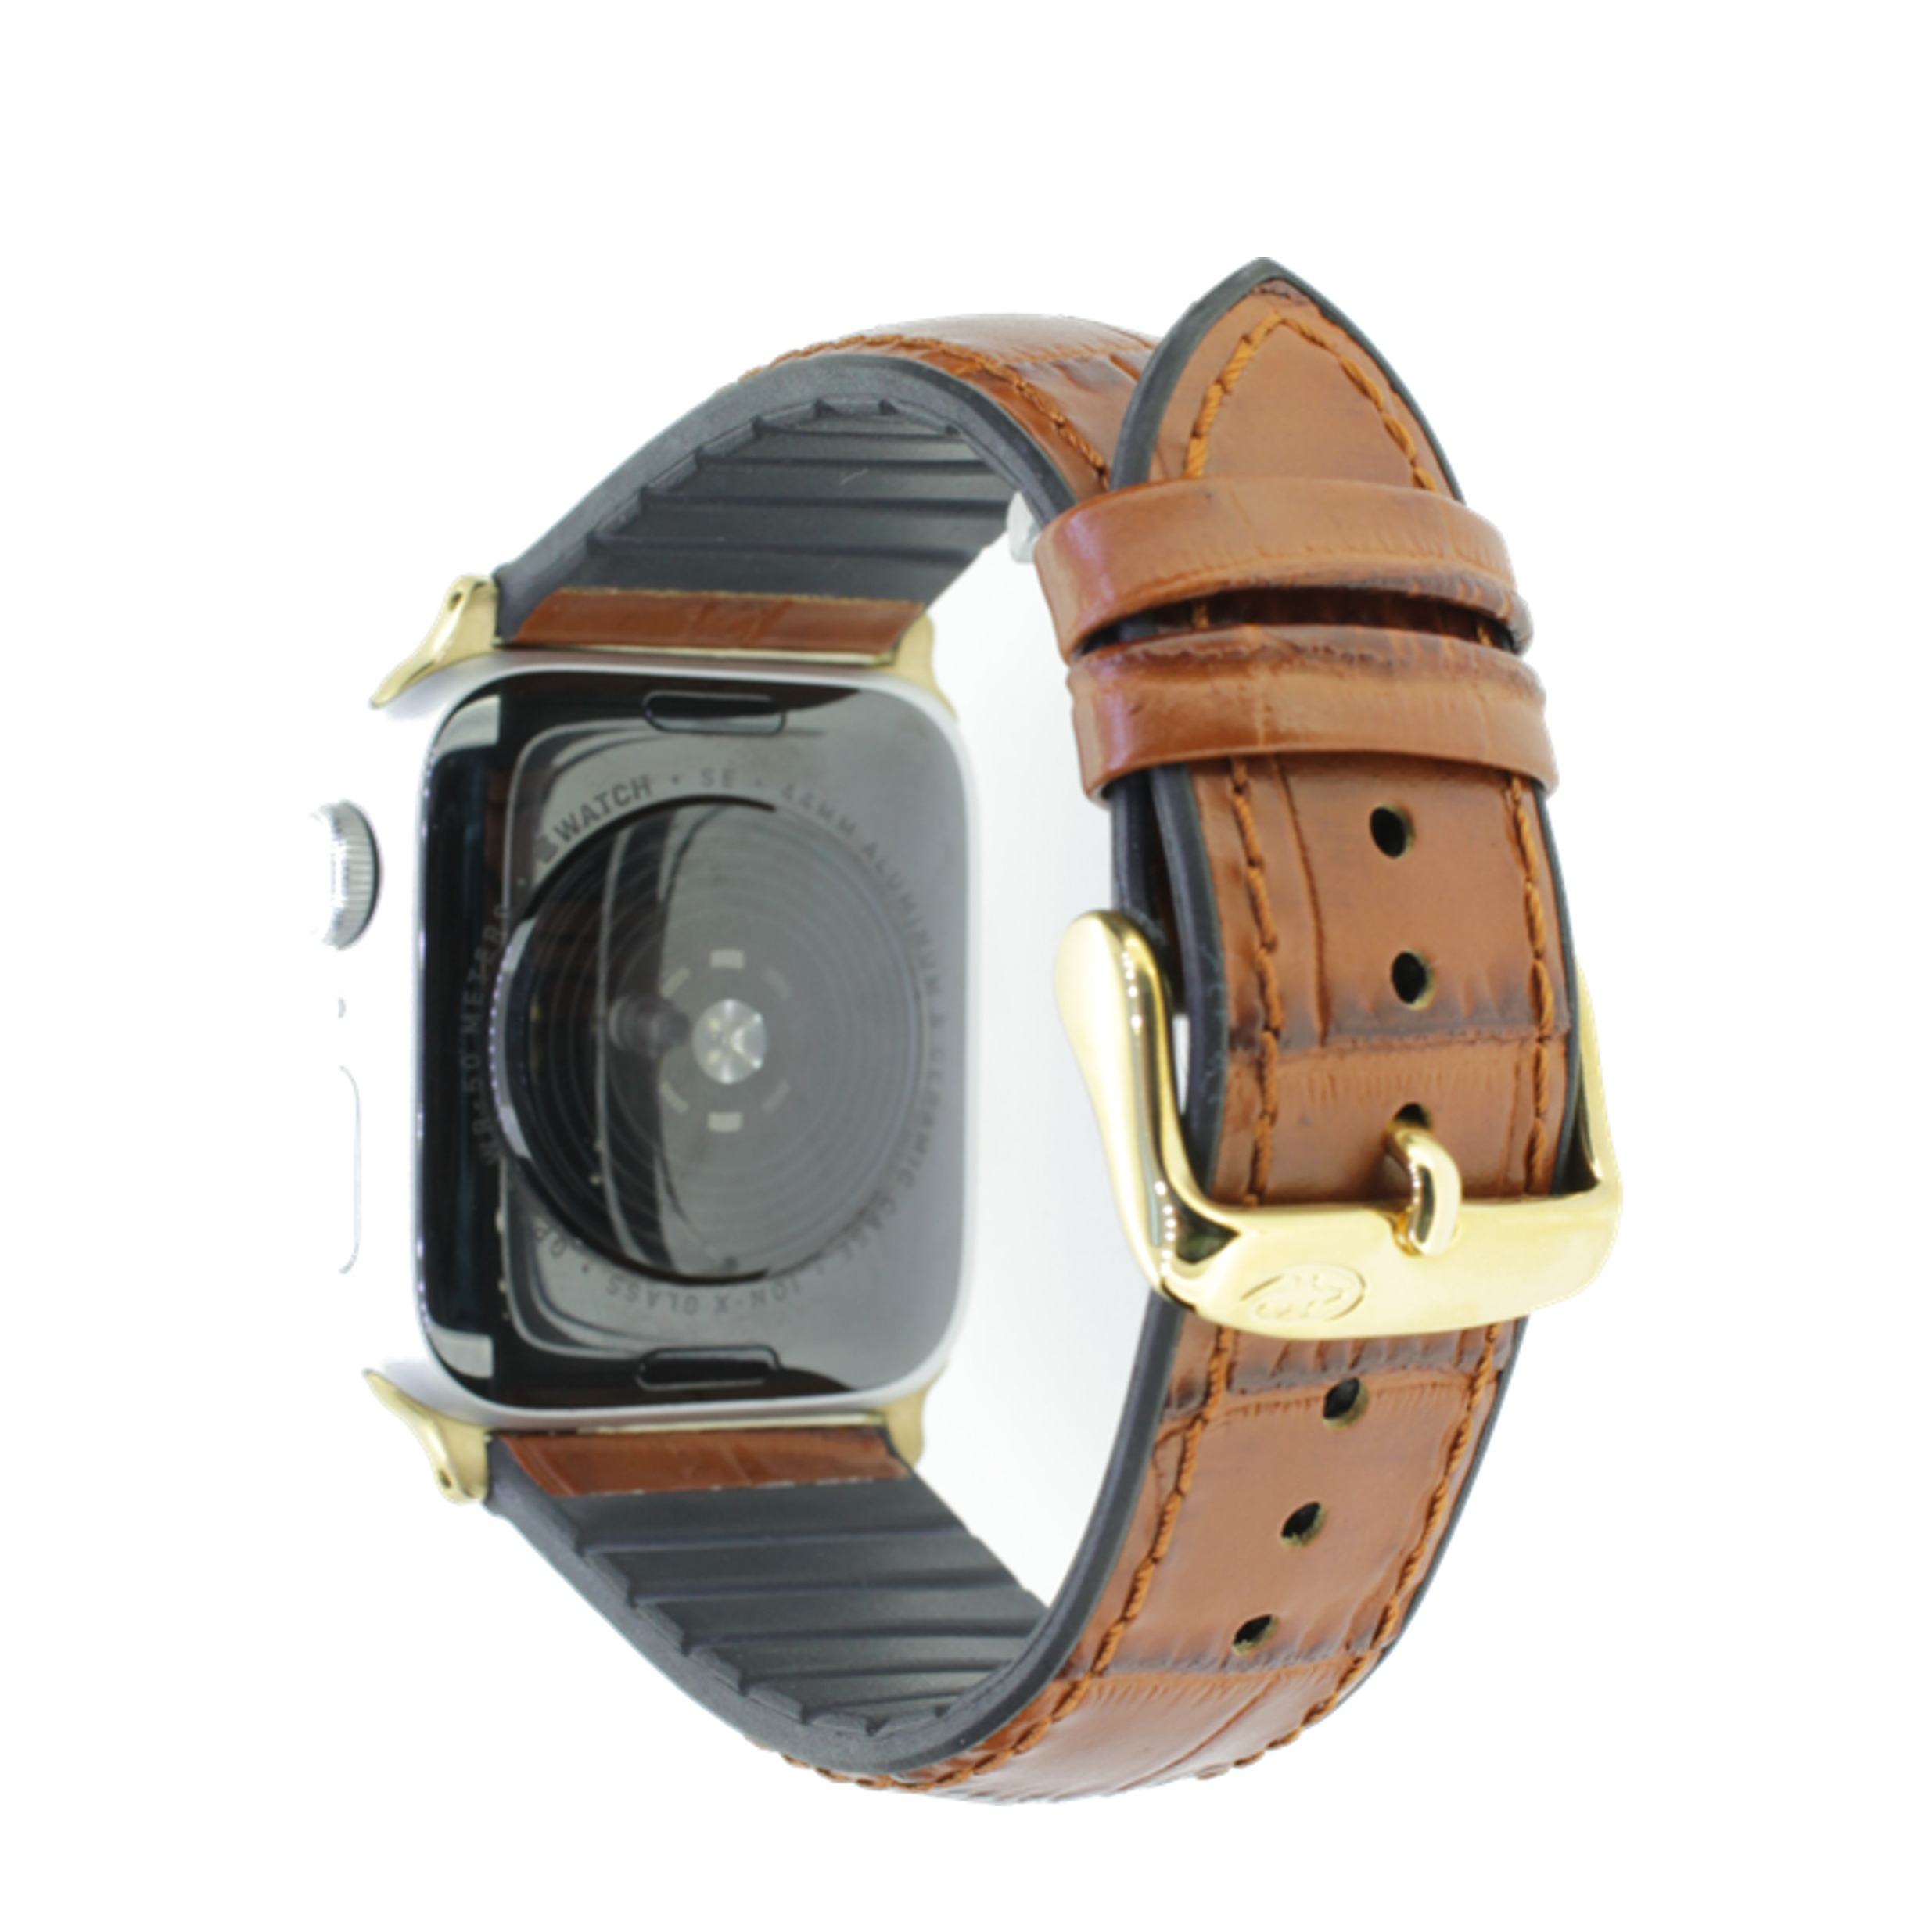 Image of Rhein Fils - Adventure Apple Watch (45/44/42 mm) Kalbsleder Armband mit Kautschuk + Alligatorprägung (Gelenkumfang: 190 - 235mm) - Braun bei Apfelkiste.ch